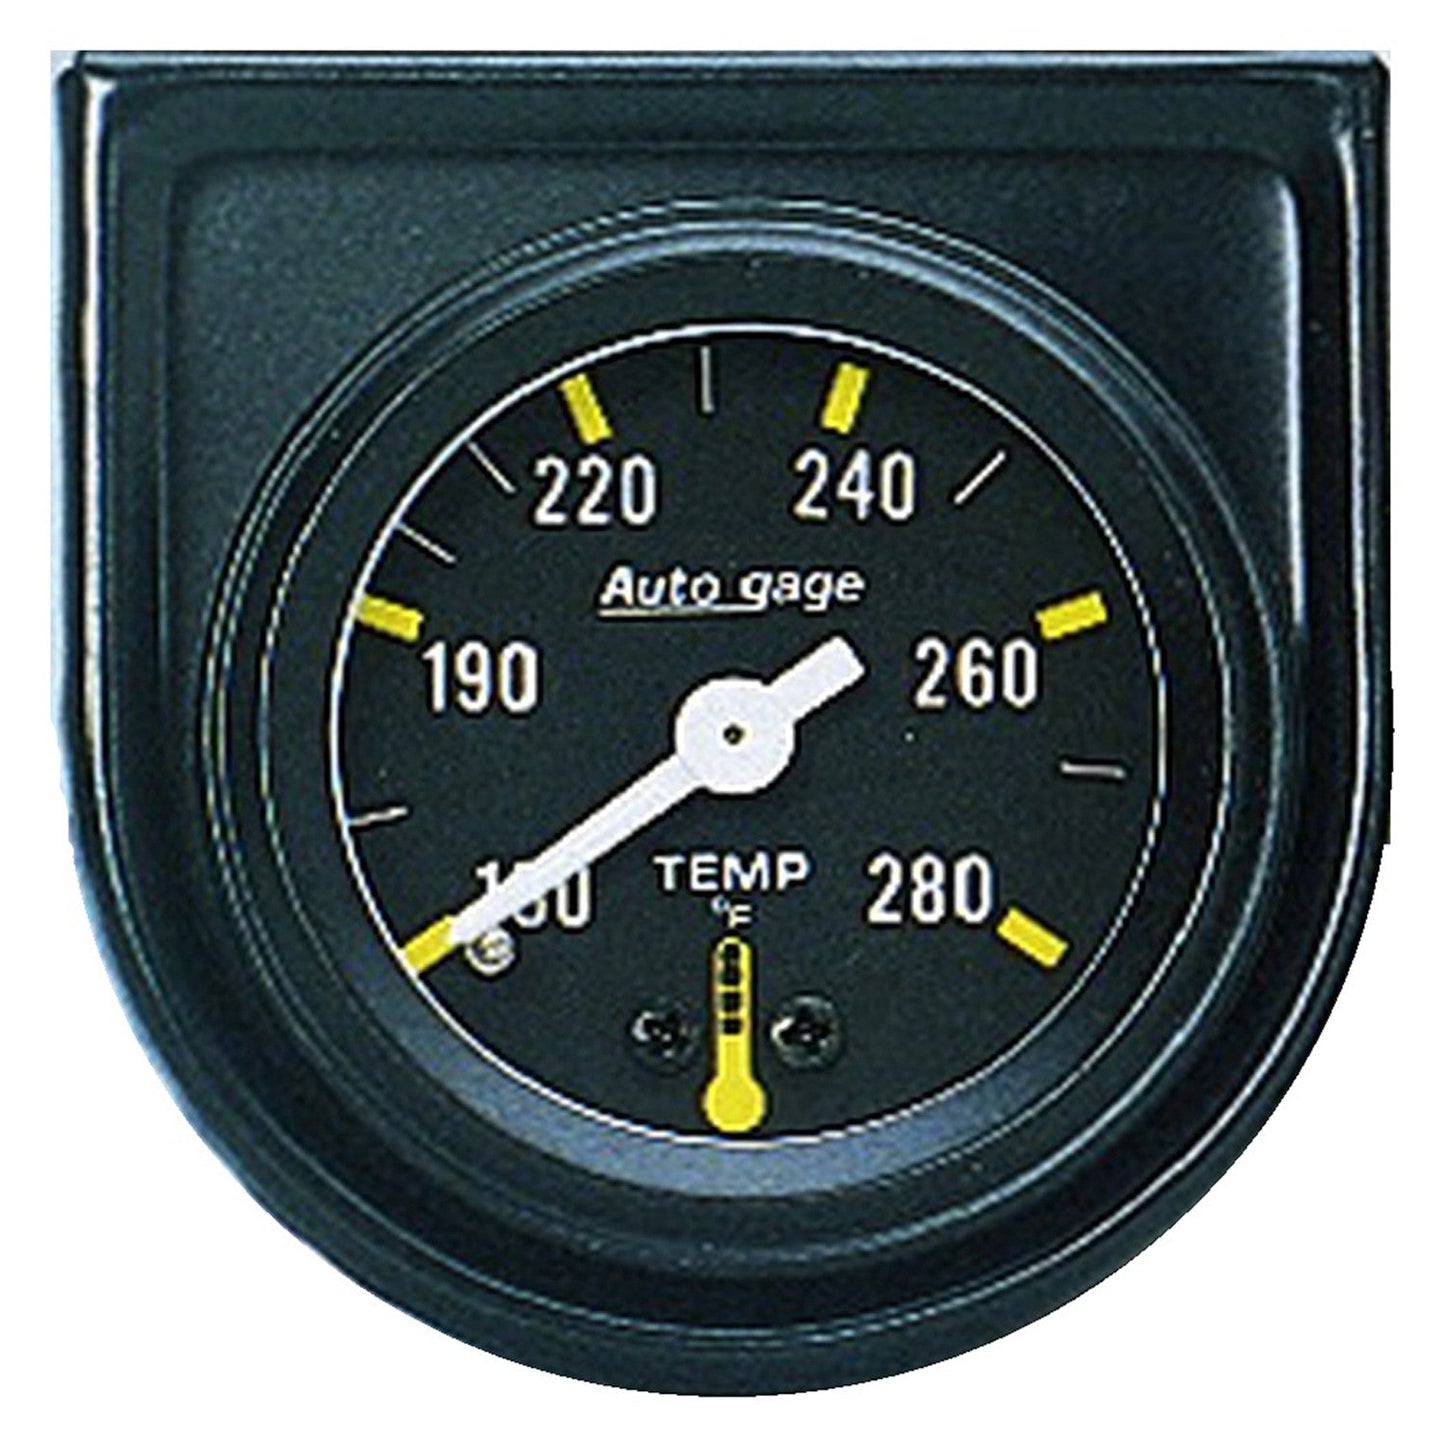 AutoMeter - TEMPERATURA DEL AGUA DE 1-1/2", 100-280 °F, 6 PIES, MECÁNICO, BARRIDO CORTO, MEDIDOR AUTOMÁTICO (2352)